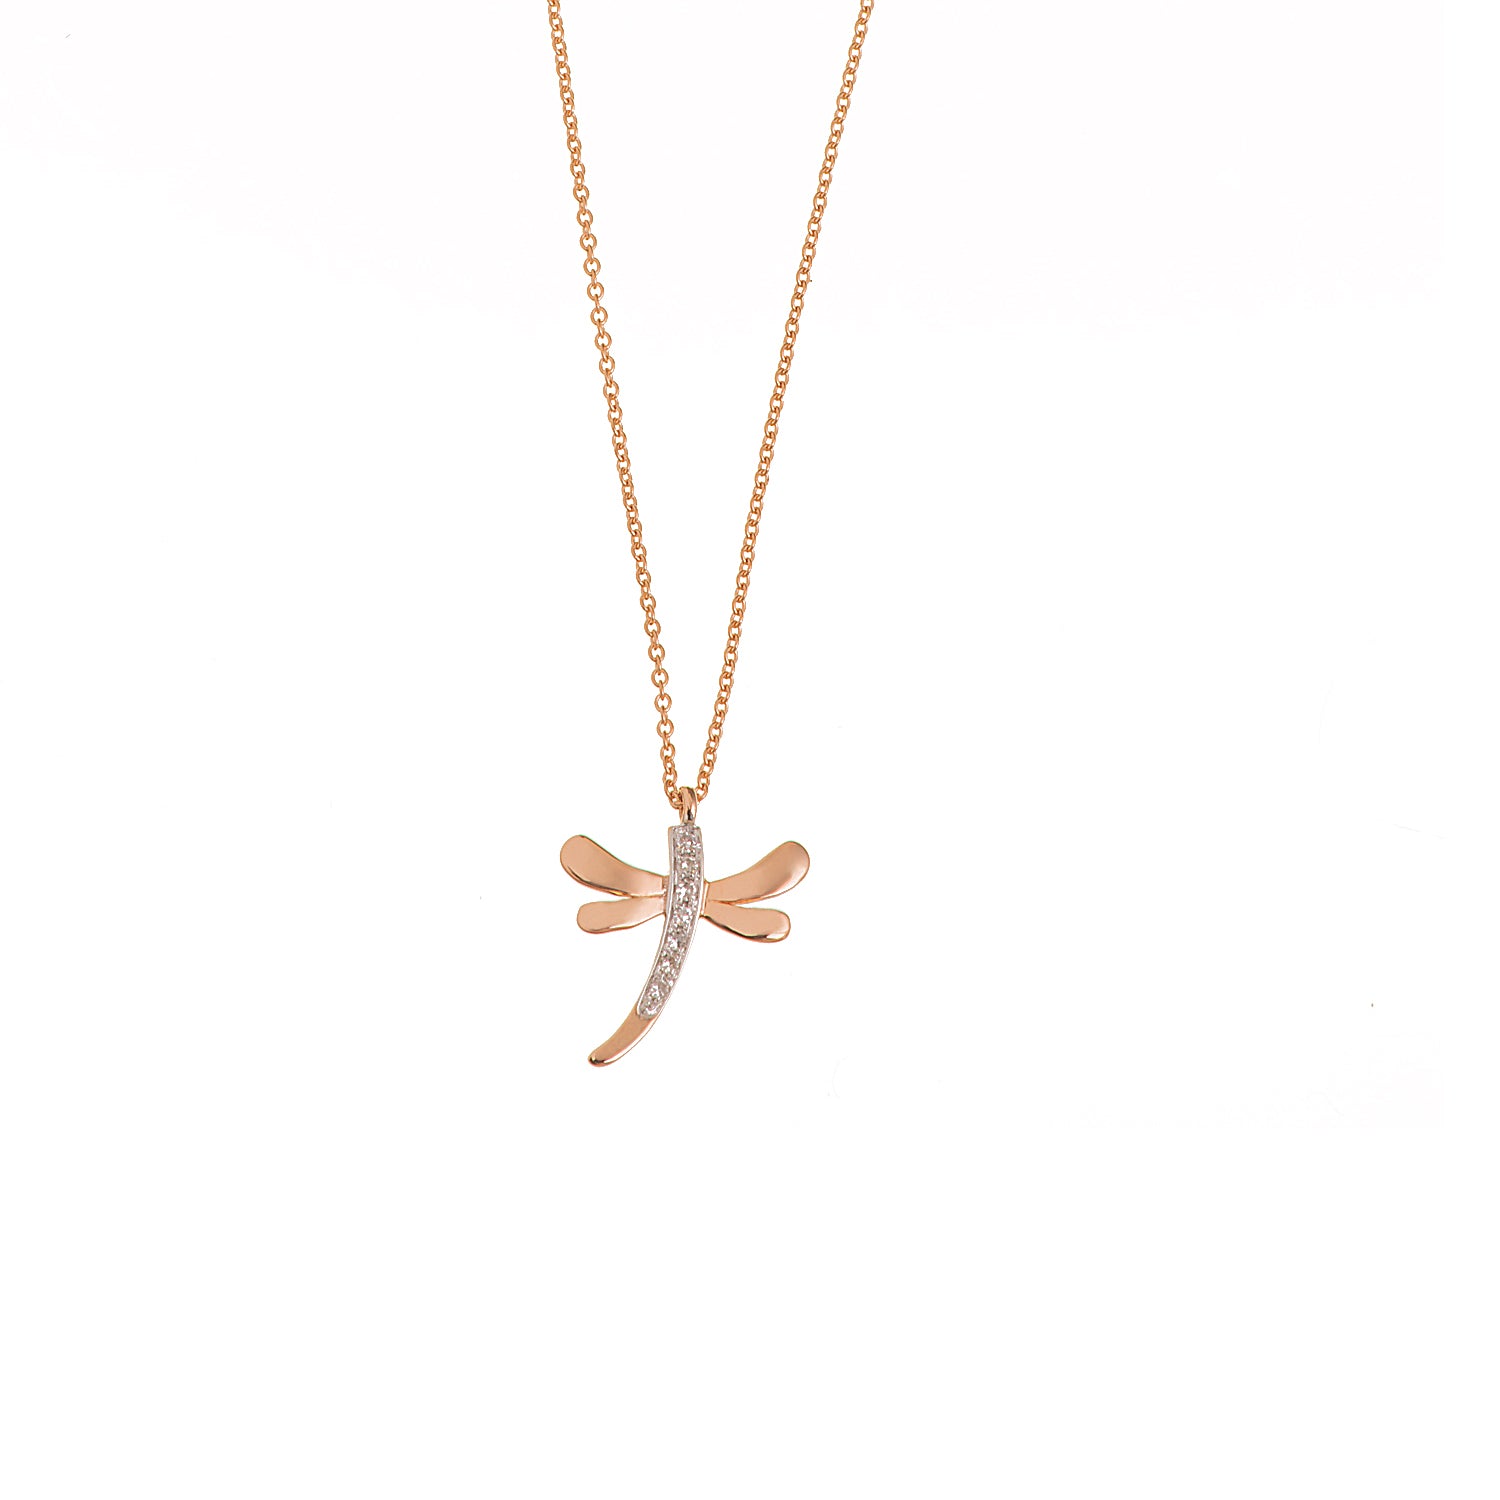 Firefly Diamond Necklace